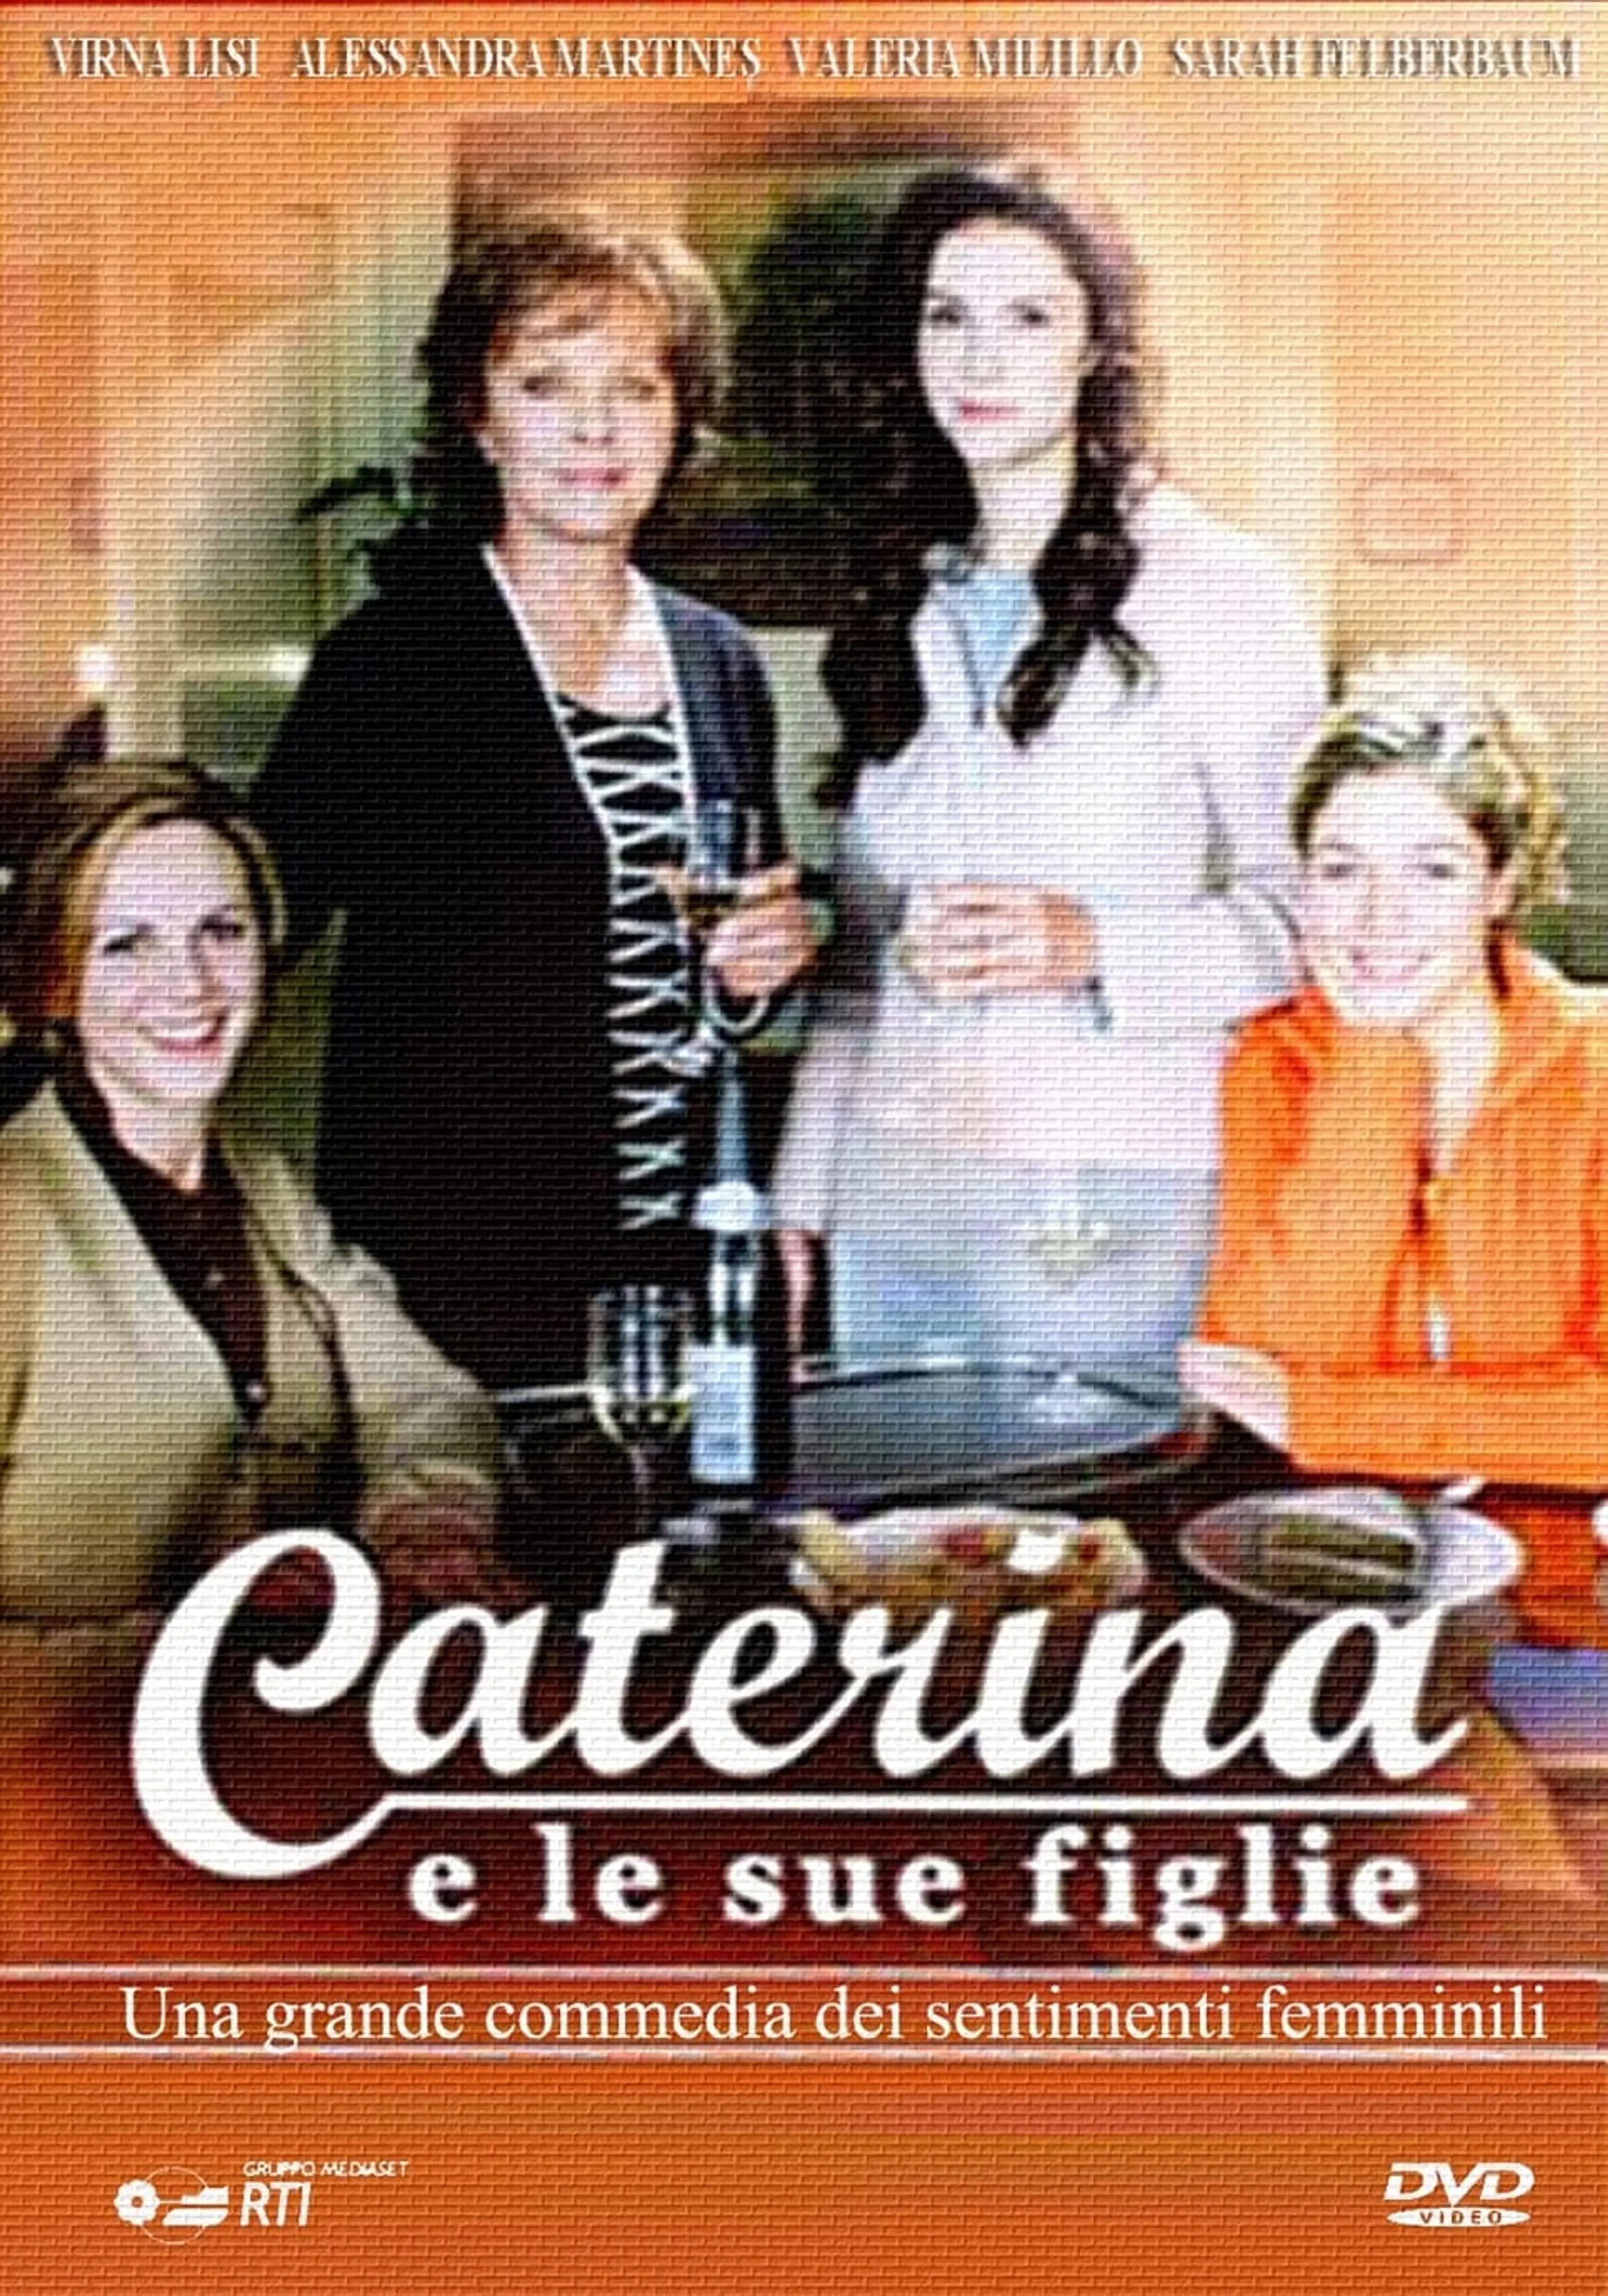 Caterina e le sue figlie